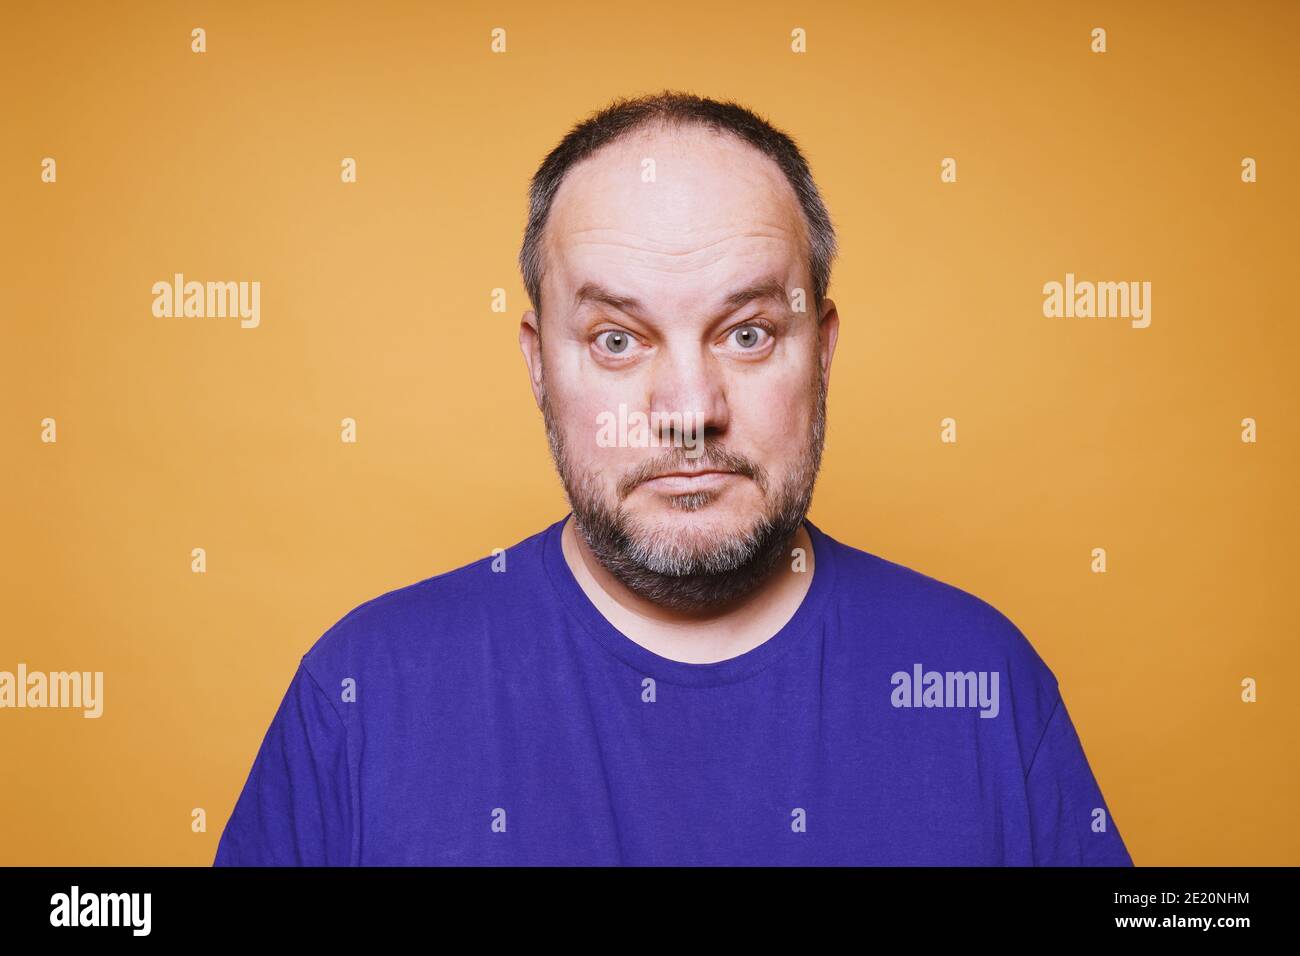 Porträt eines mittleren erwachsenen Mannes mit dumbfounded Blick auf seine Gesicht vor orangenen Studiohintergrund - verwirrter Gesichtsausdruck Stockfoto